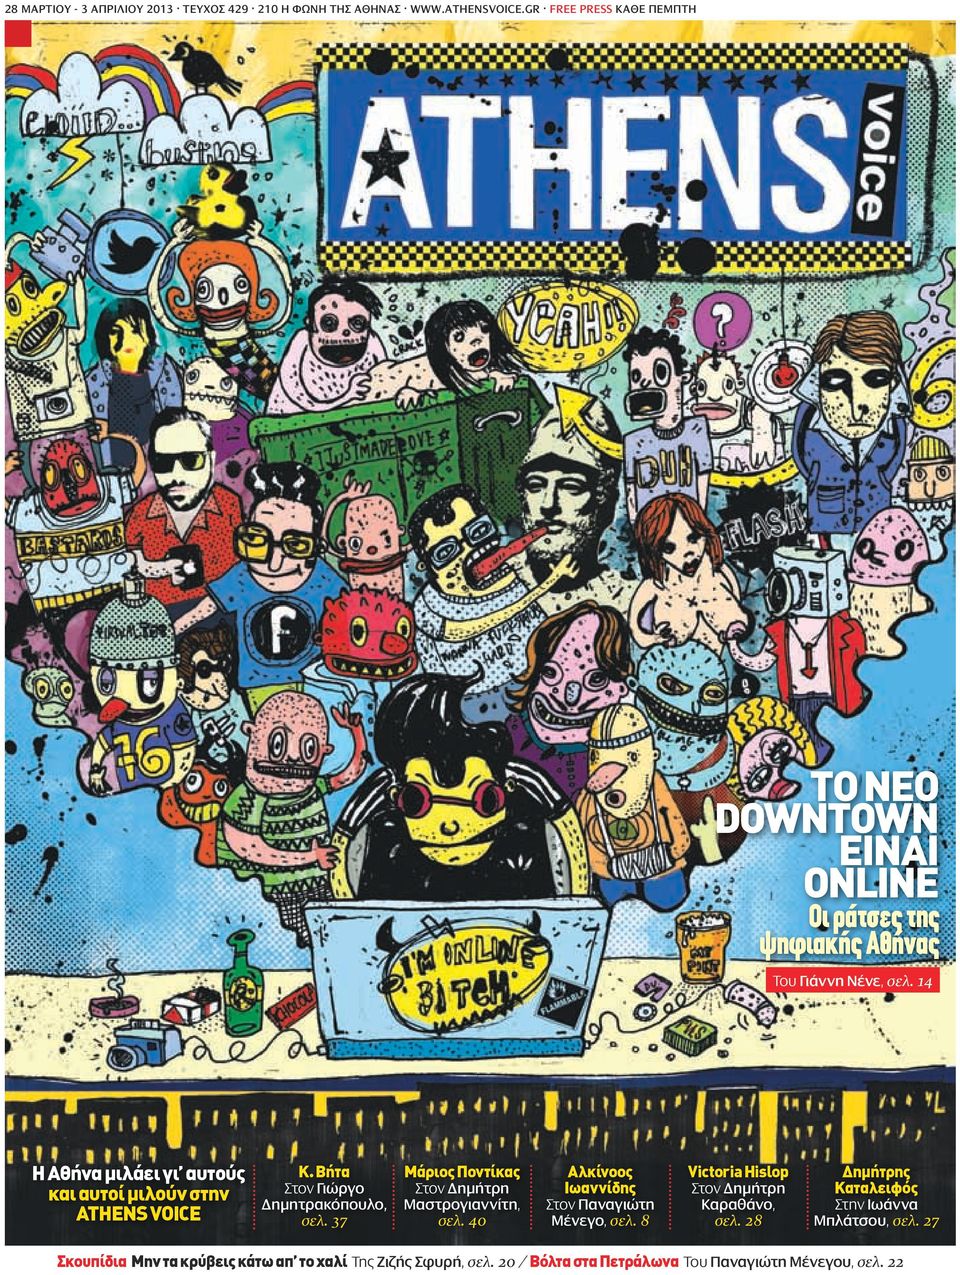 14 Η Αθήνα μιλάει γι αυτούς και αυτοί μιλούν στην ATHENS VOICE Κ. Βήτα Στον Γιώργο Δημητρακόπουλο, σελ.